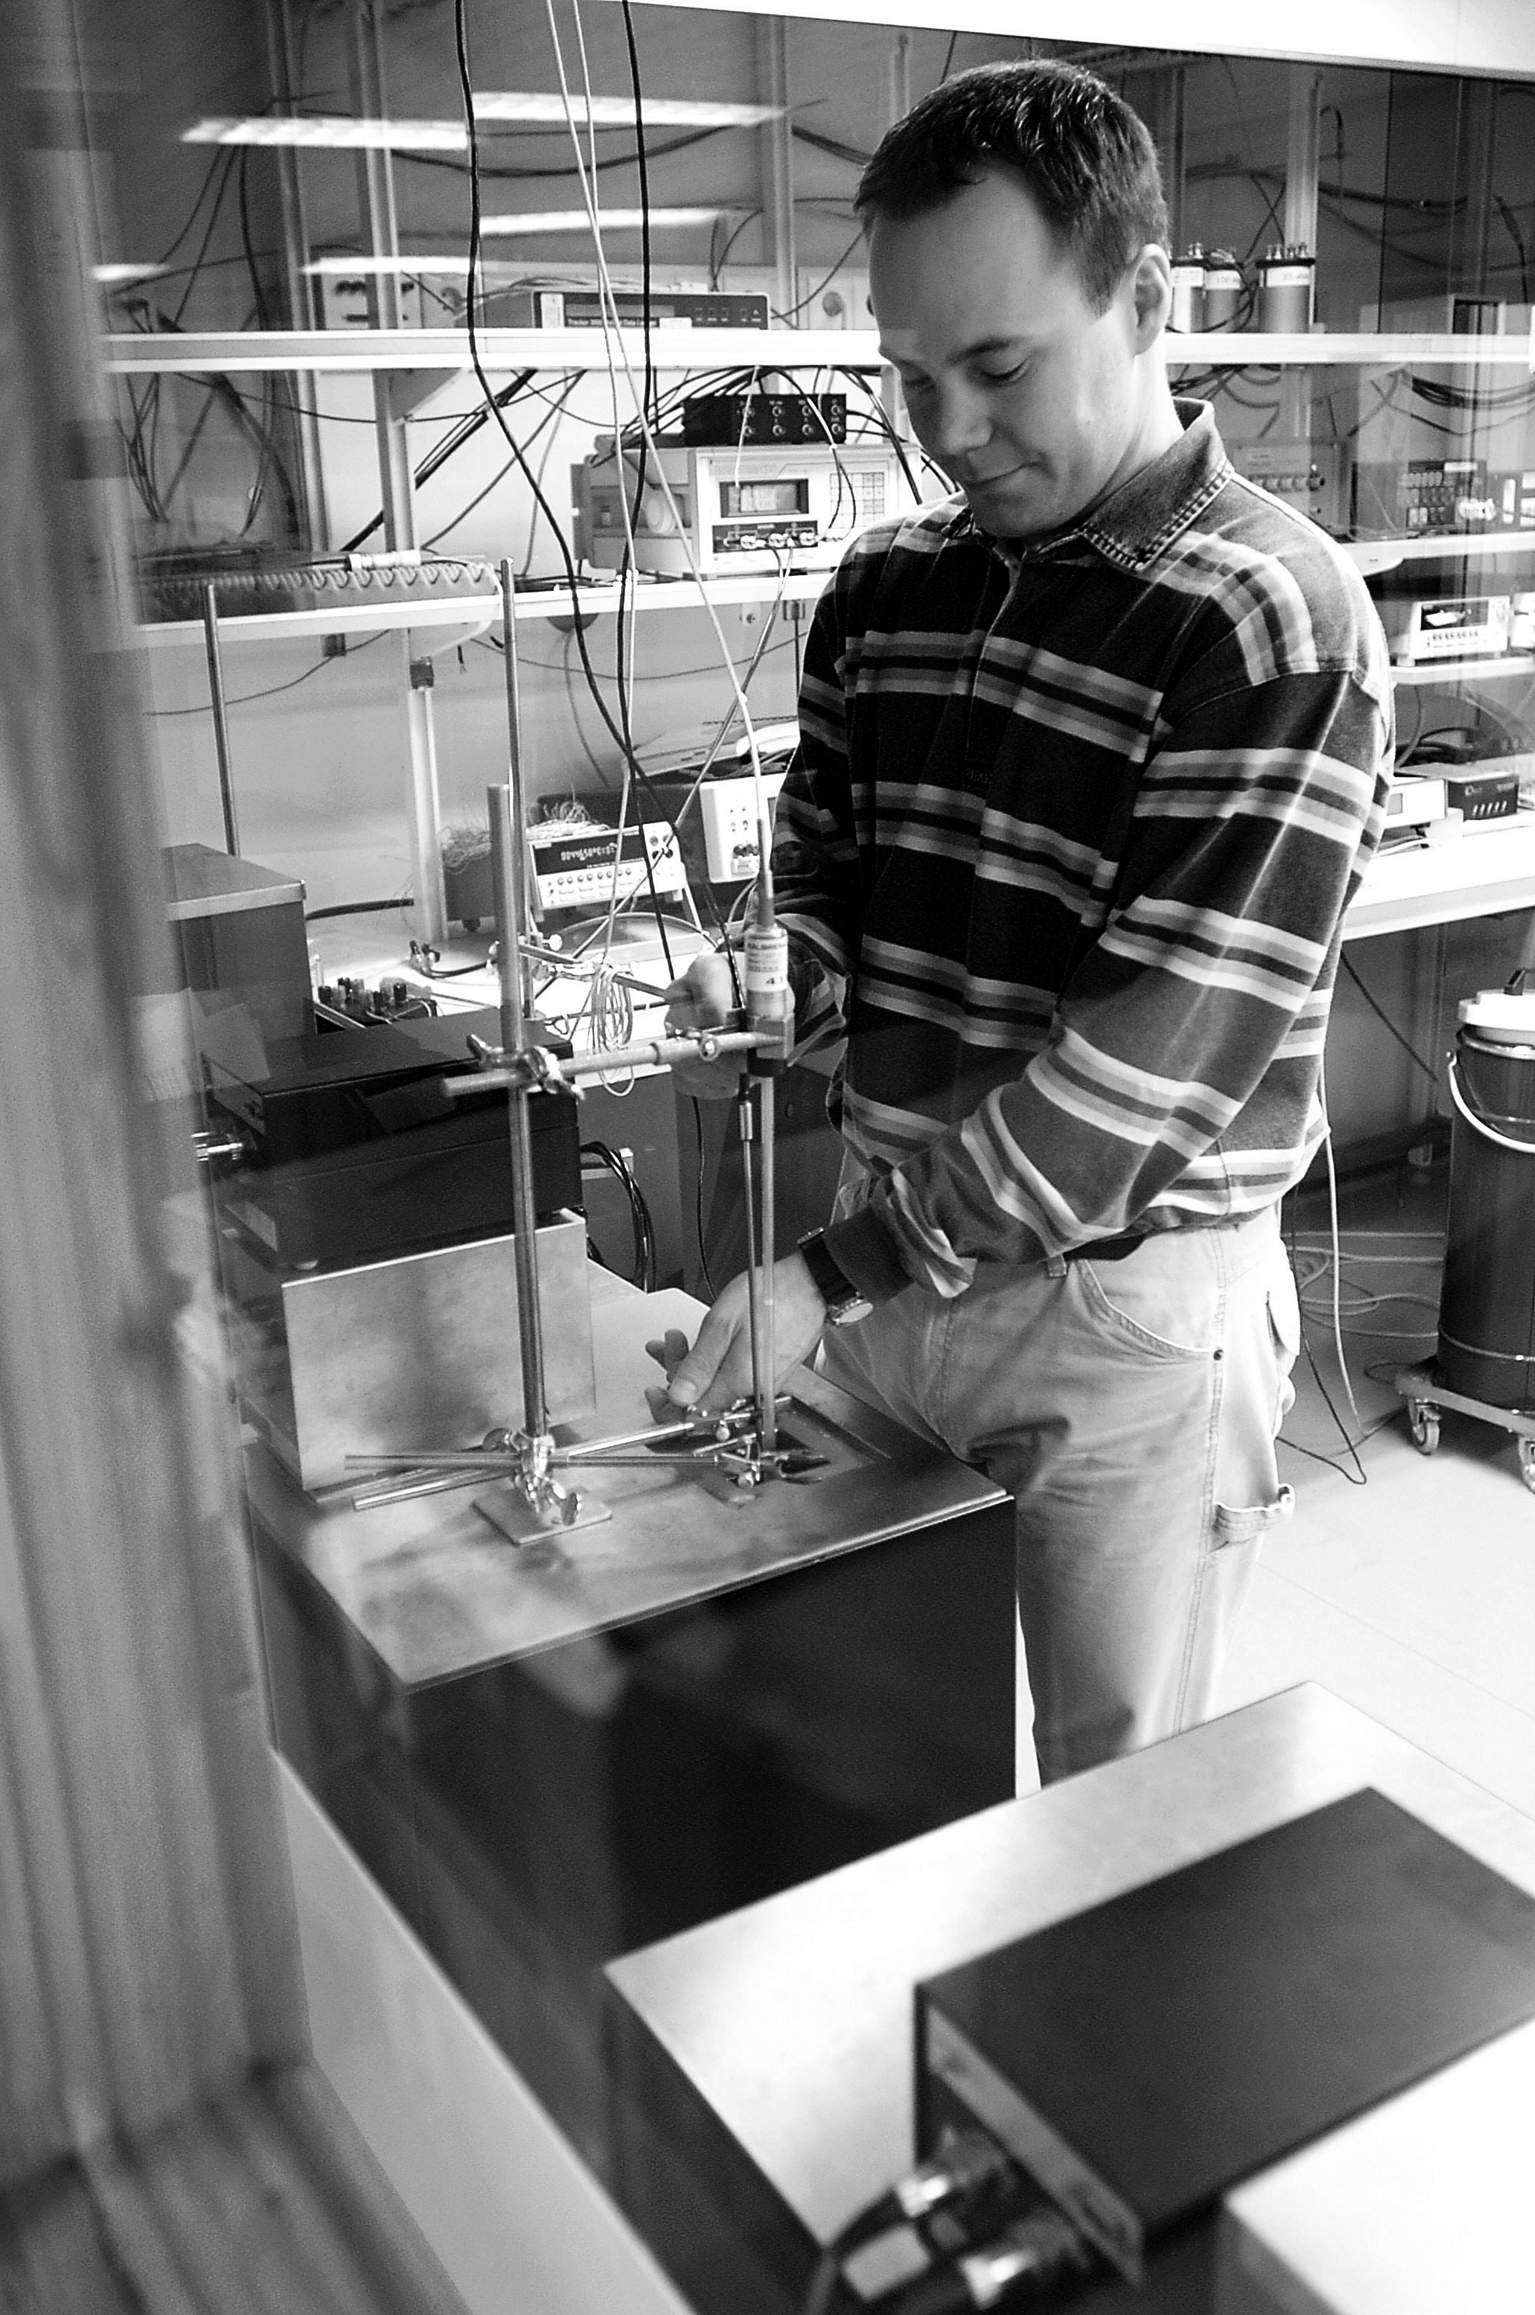 Pentronics laboratorium ackrediterades redan 1988. Det var landets första laboratorium utanför SP som realiserade delar av temperaturskalan med egna fixpunkter. Laboratoriet utvecklas kontinuerligt genom att uppfylla nya kundkrav.